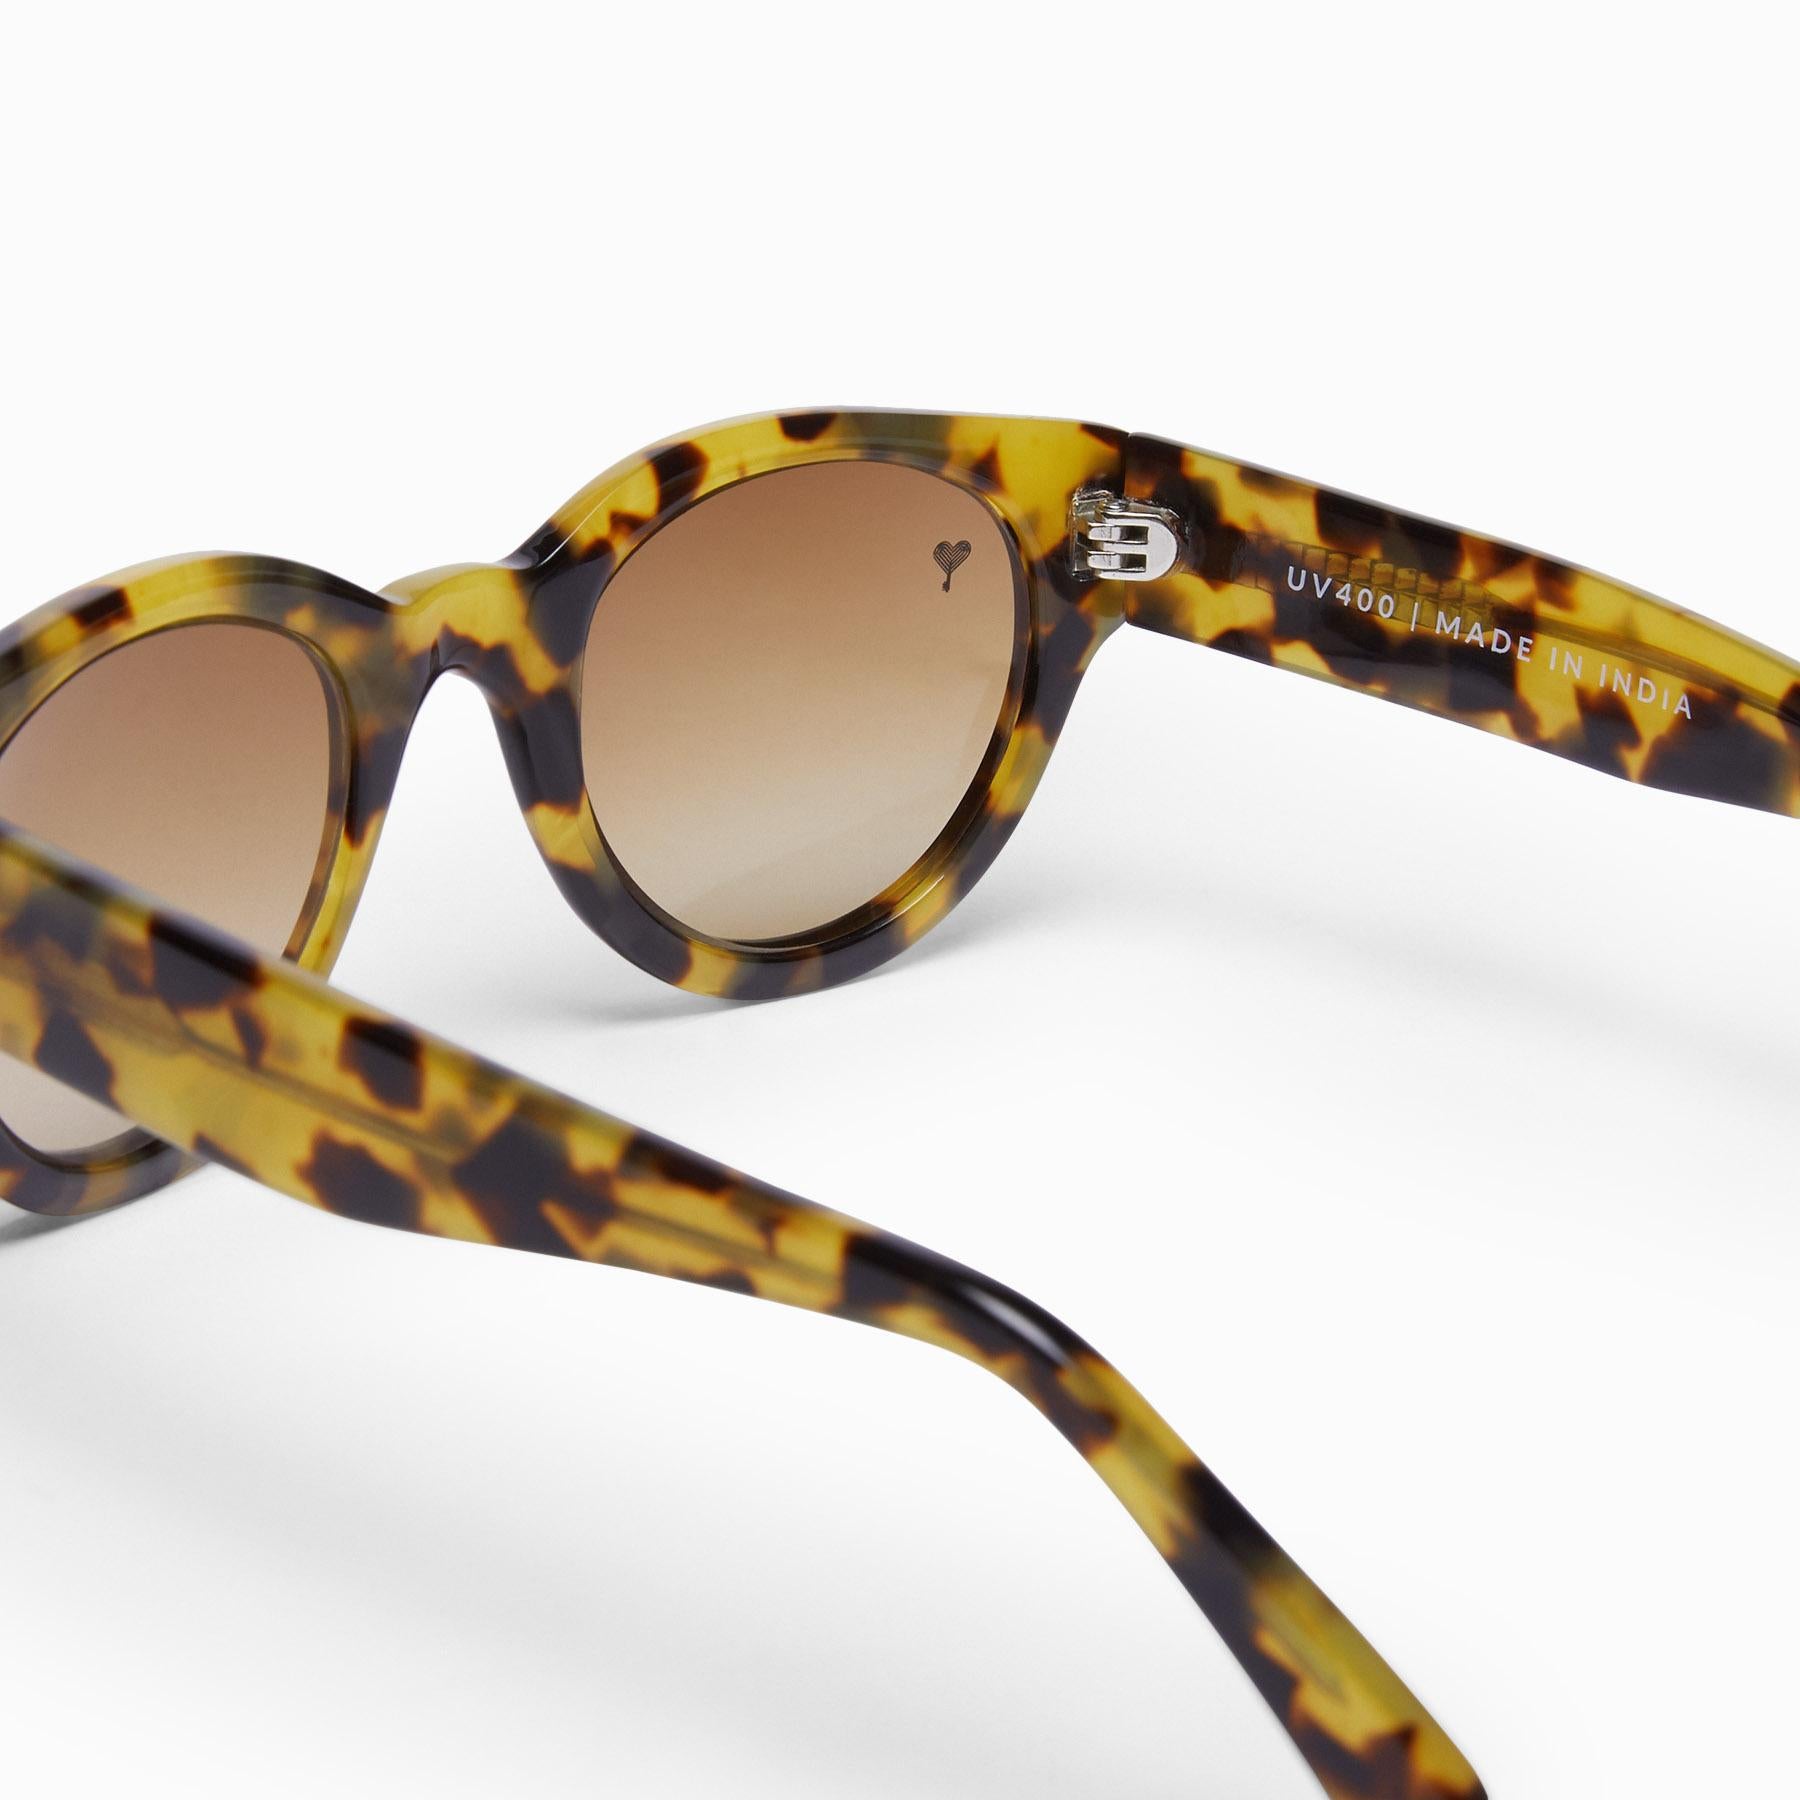 Light Tortoise Shell Oval Sunglasses